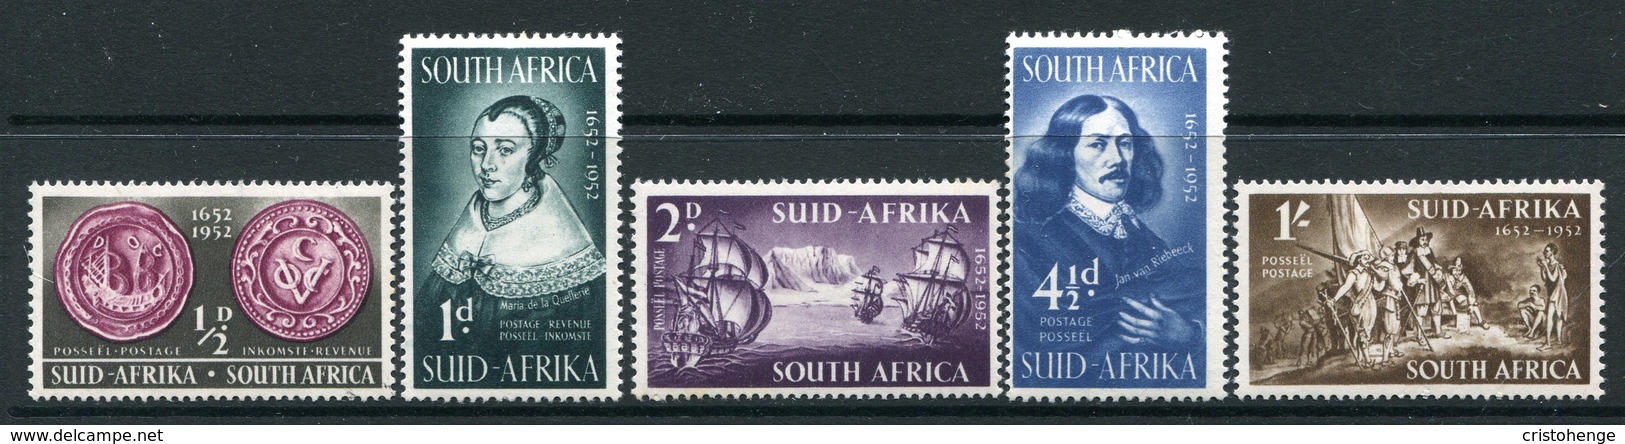 South Africa 1952 Tercentenary Of Landing Of Van Riebeeck Set HM (SG 136-140) - Unused Stamps